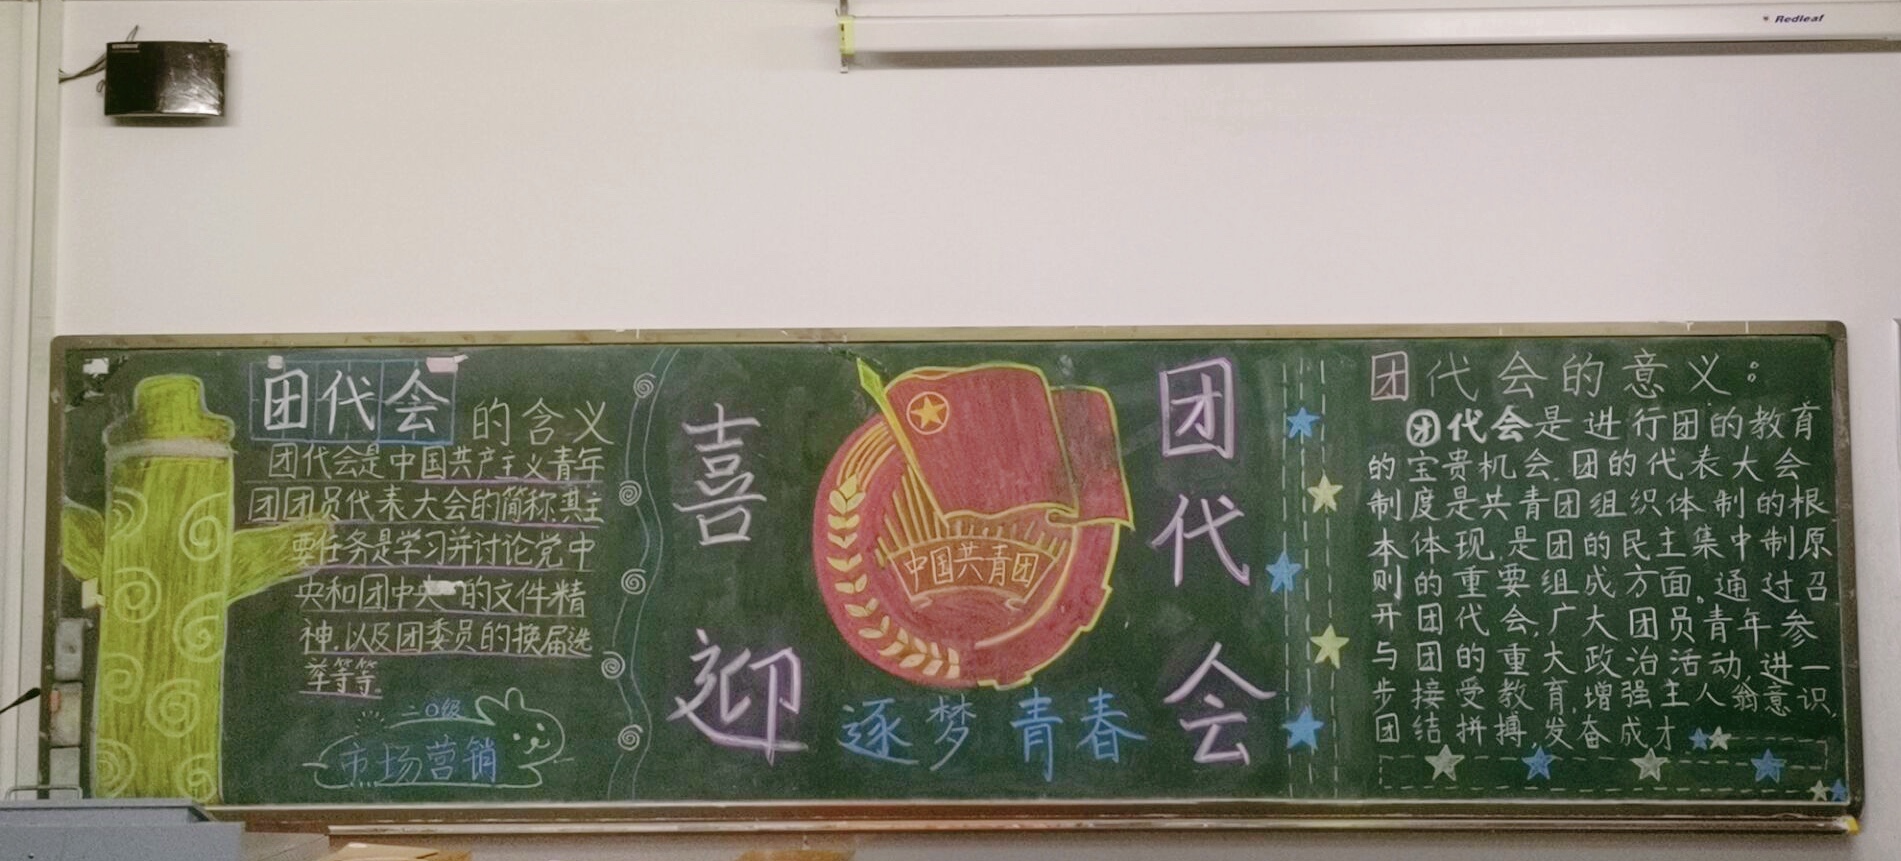 中国共青团黑板报图片